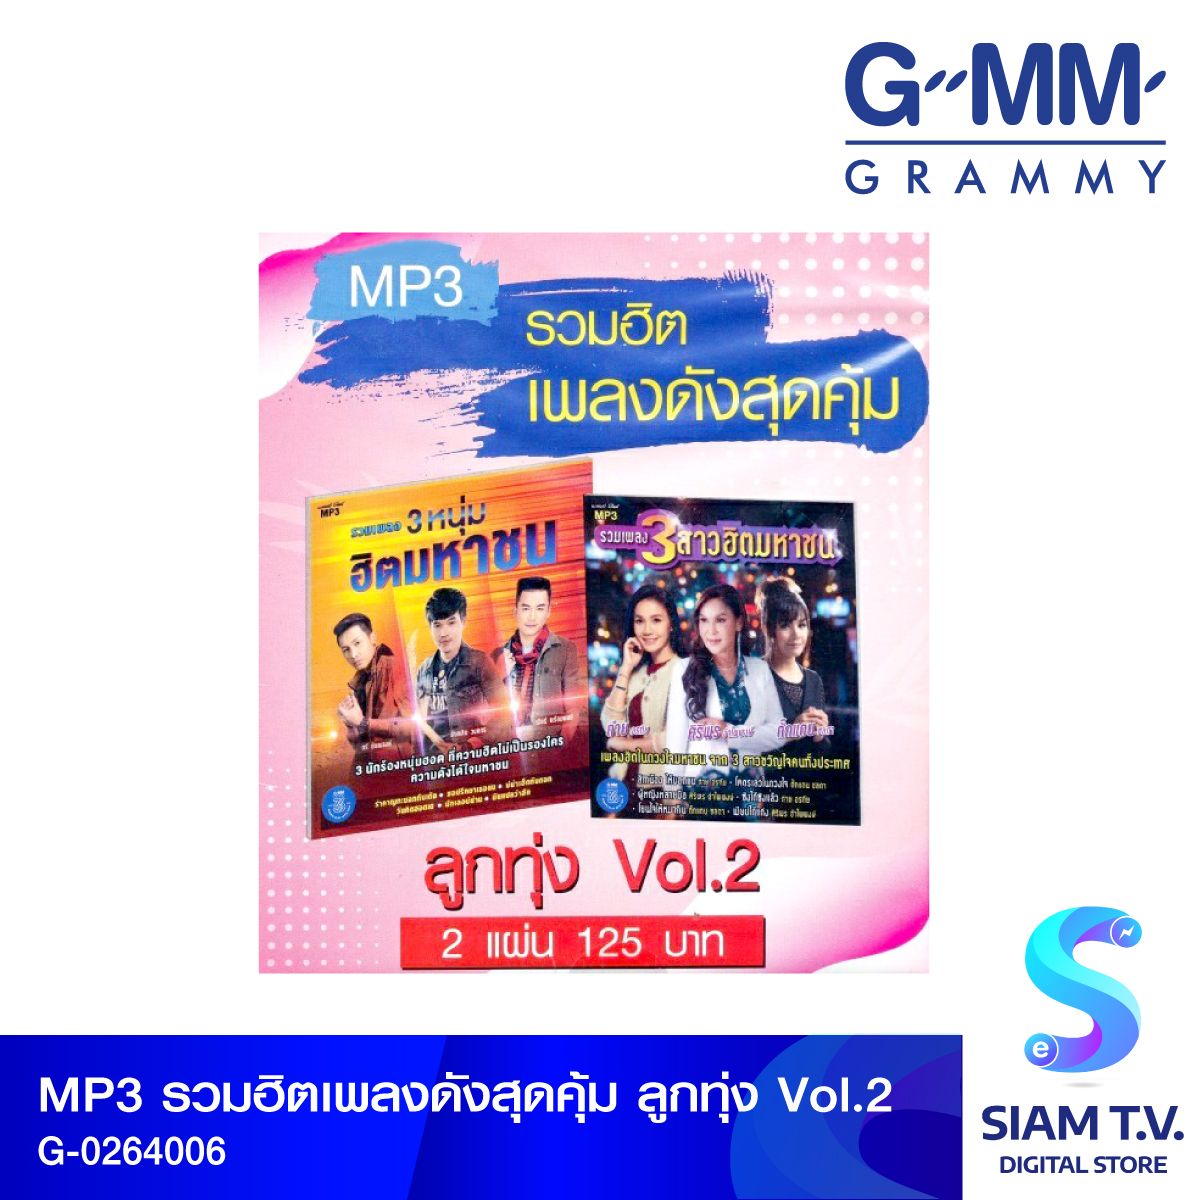 GMM GRAMMY MP3รวมฮิตเพลงดังสุดคุ้ม ลูกทุ่งVol.2